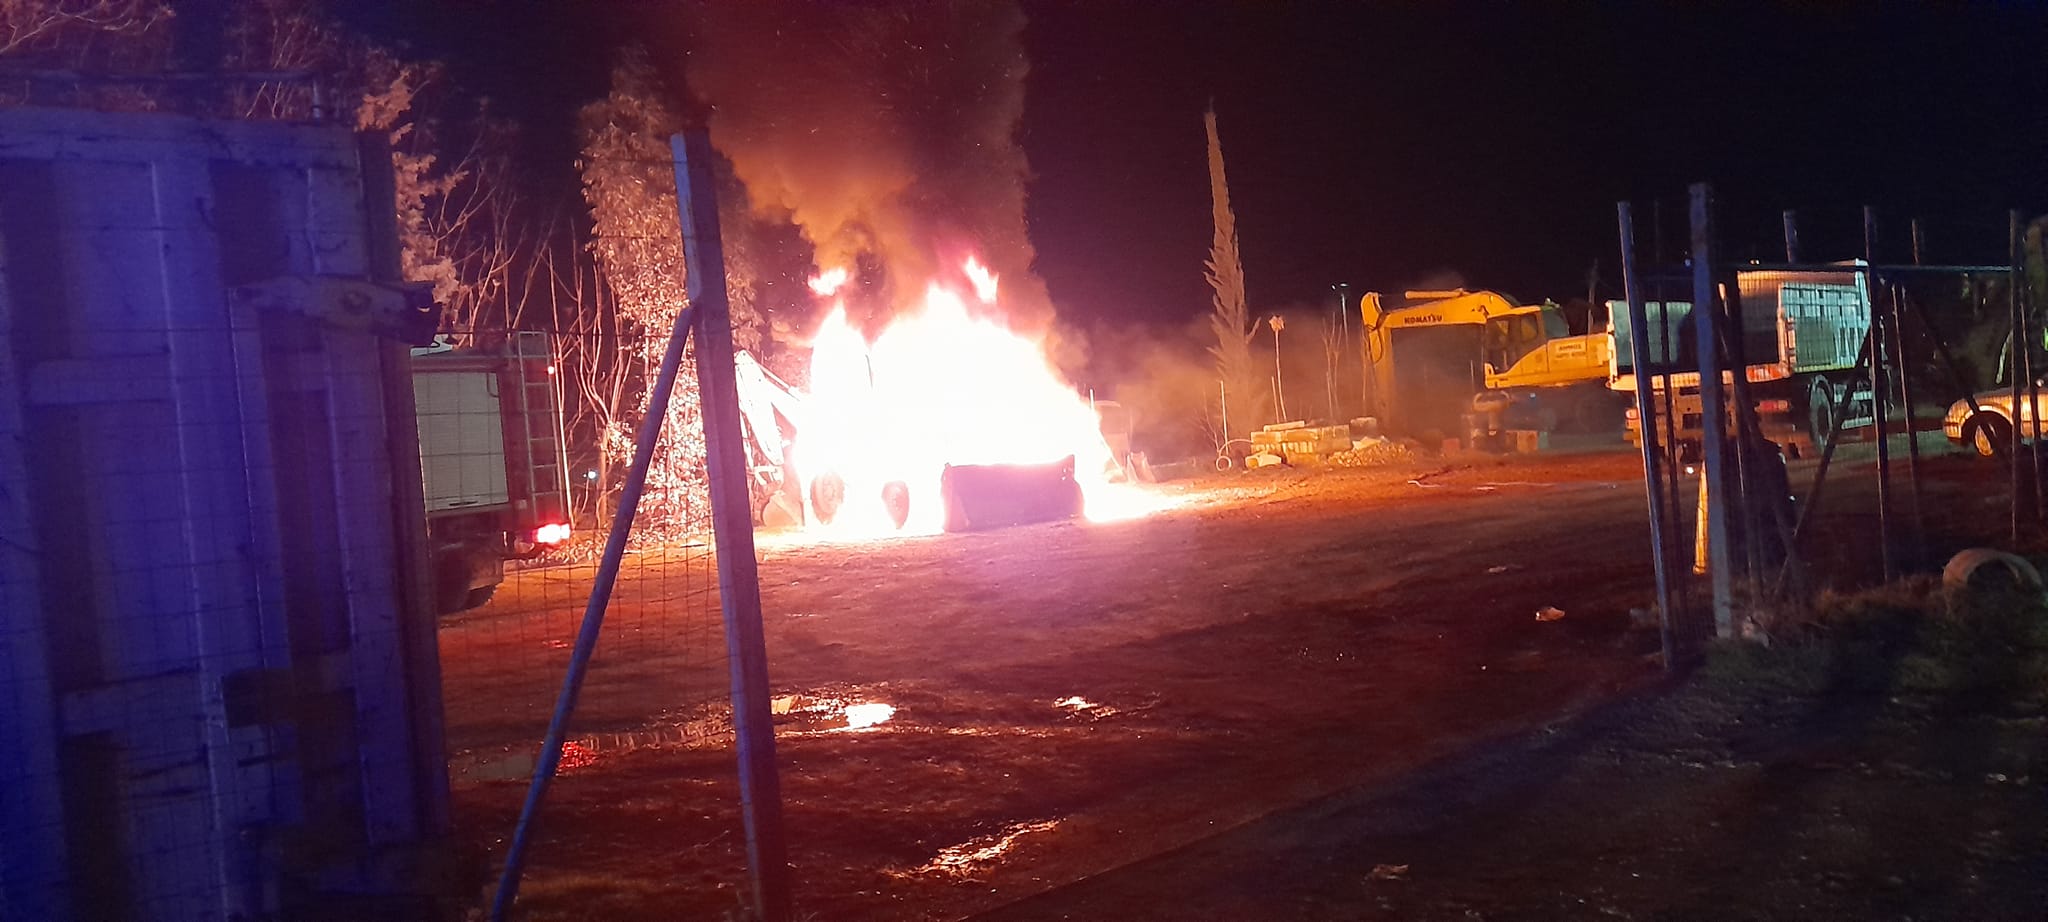 Άγνωστοι έκαψαν μηχάνημα του Δήμου Αλιάρτου-Θεσπιέων -Άμεση αντίδραση για καινούργιο σκαπτικό από τον Στ. Πέτσα | e-sterea.gr